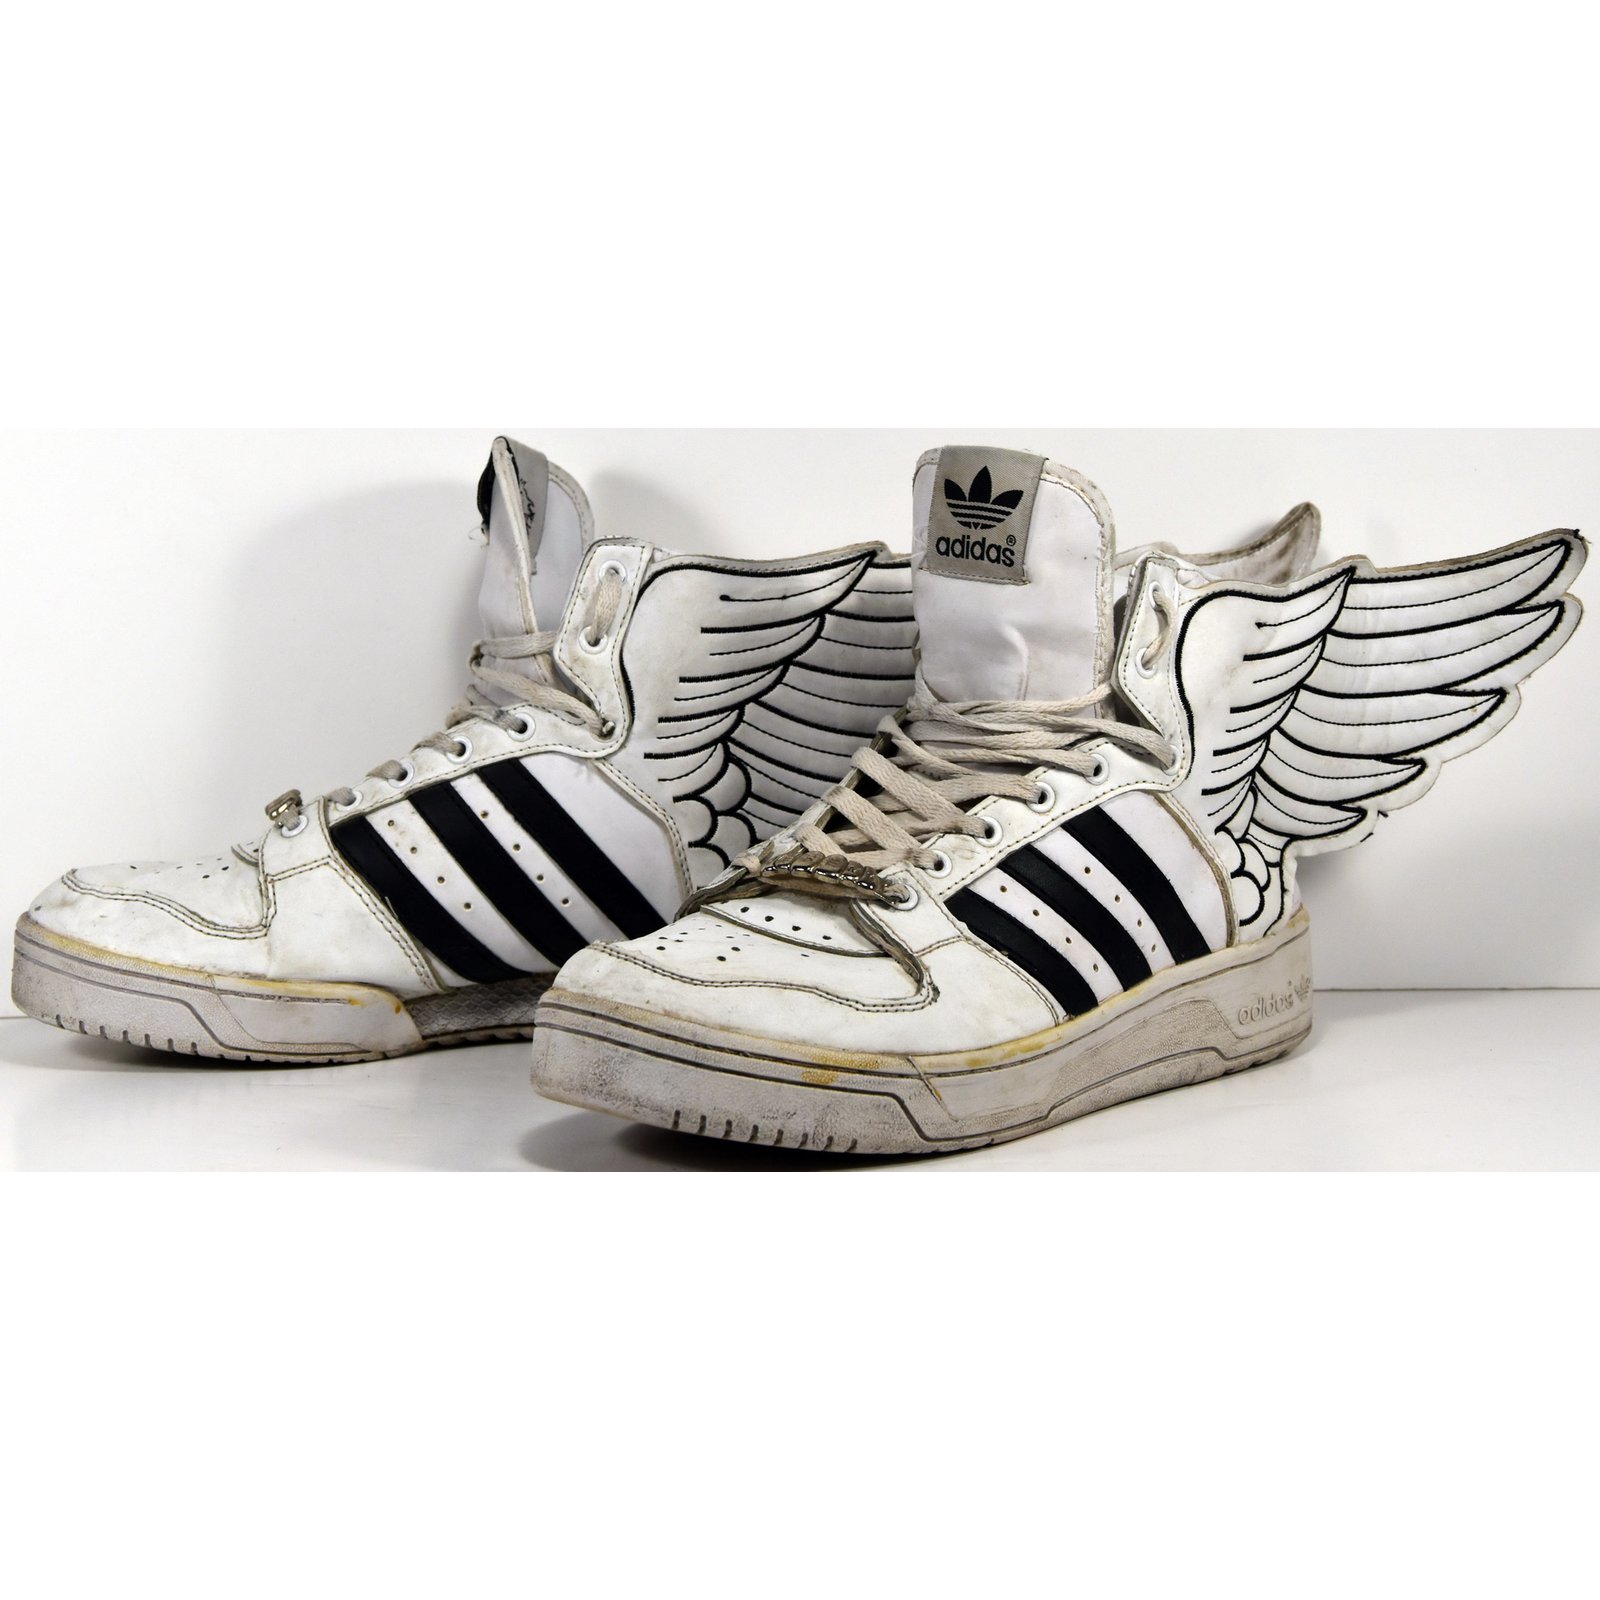 adidas jeremy scott wings 3.0 femme blanche